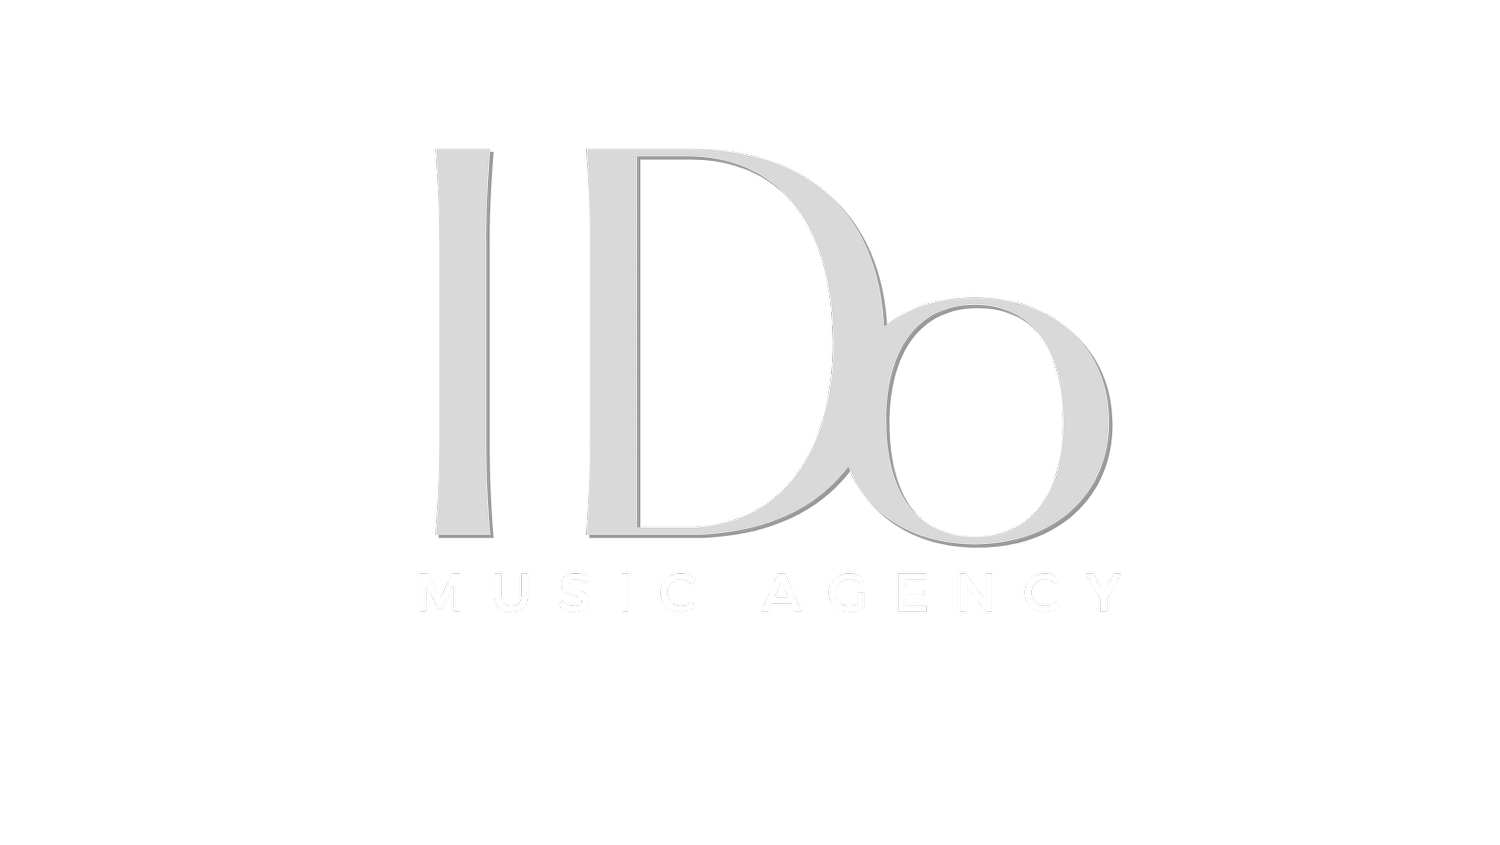 I Do Music Agency